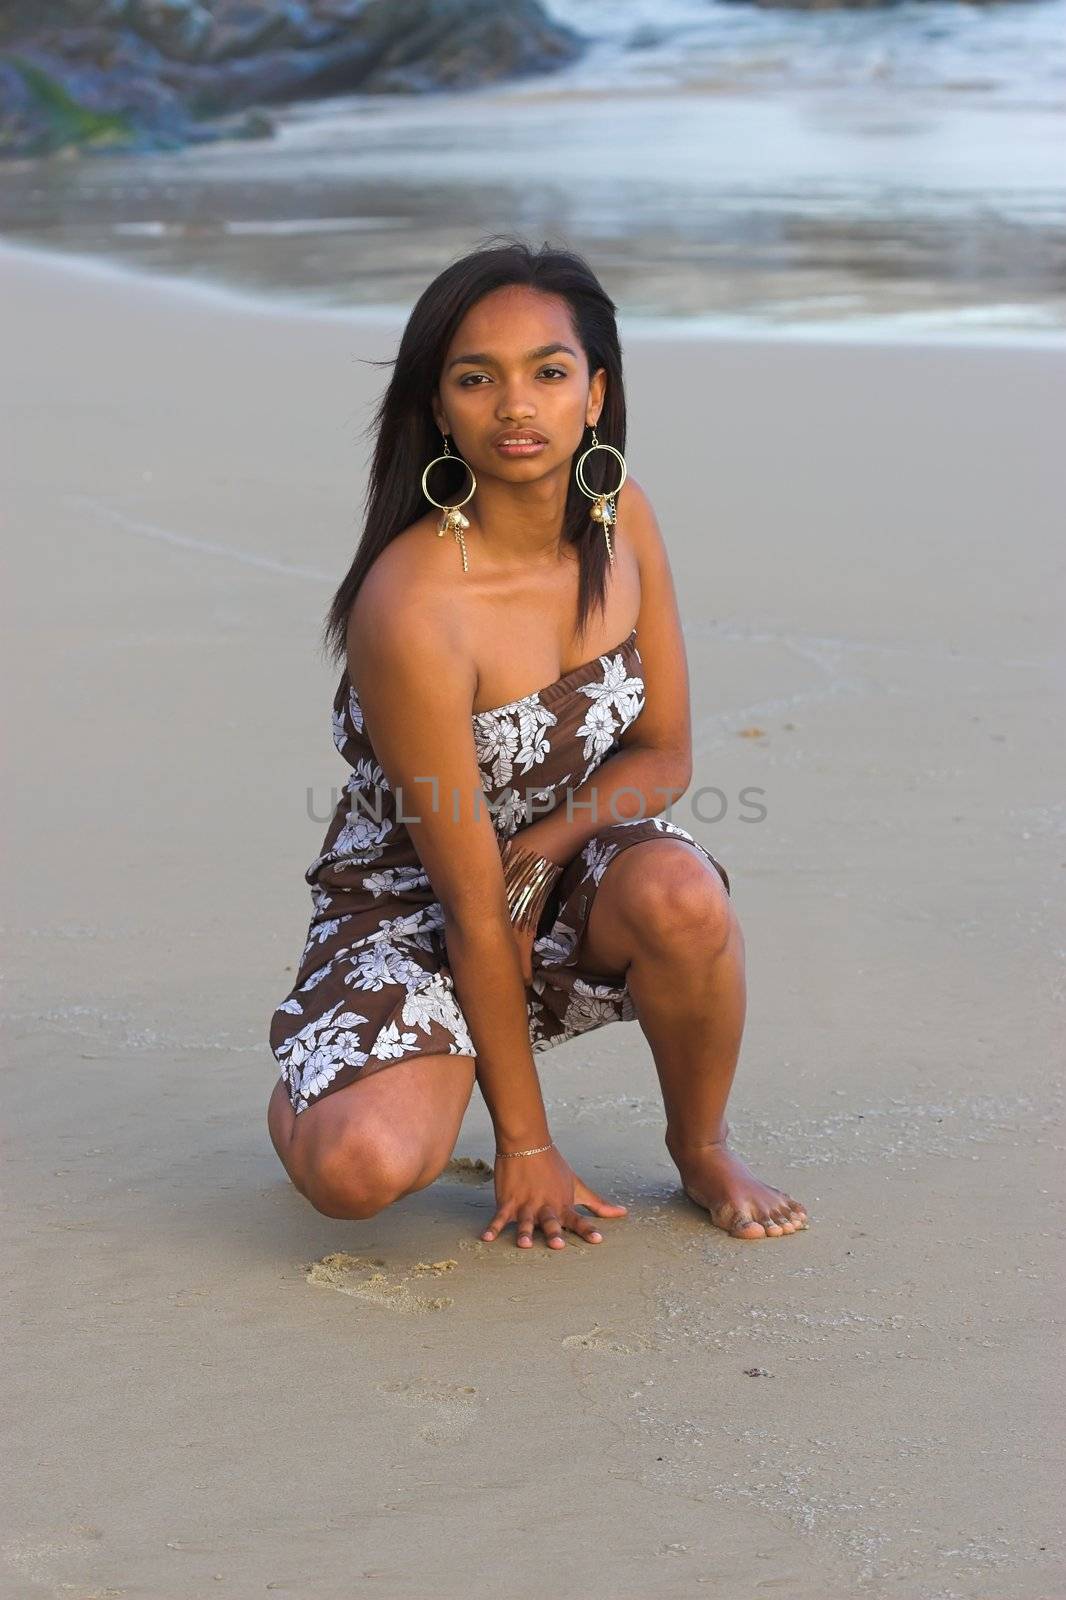 Caribbean girl on the sand at the beach